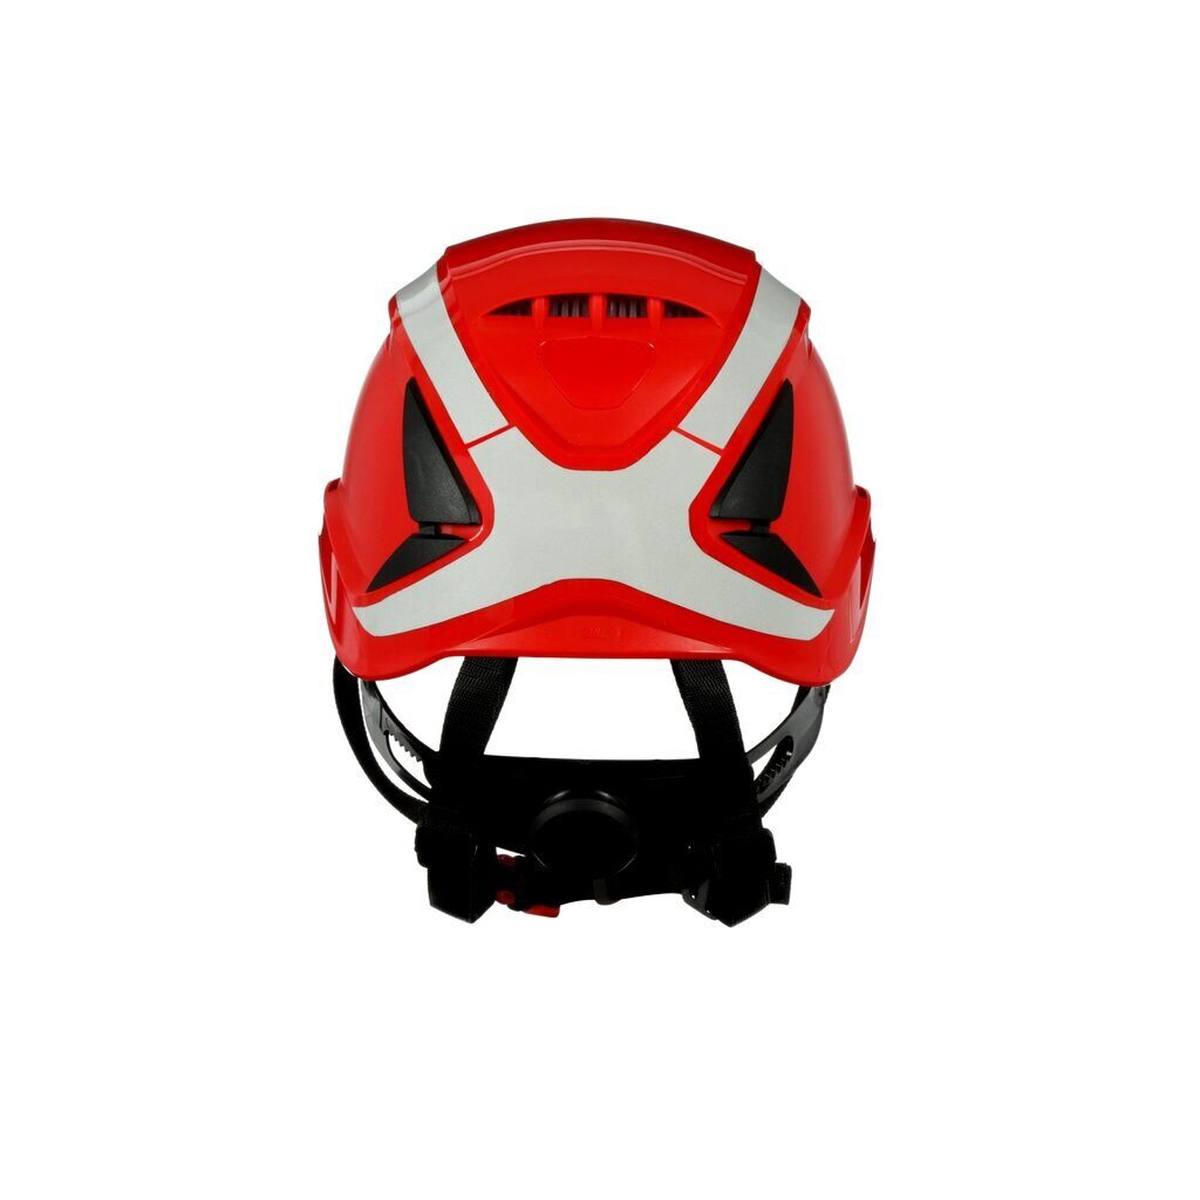 3M SecureFit casque de protection, X5005V-CE, rouge, ventilé, réfléchissant, CE